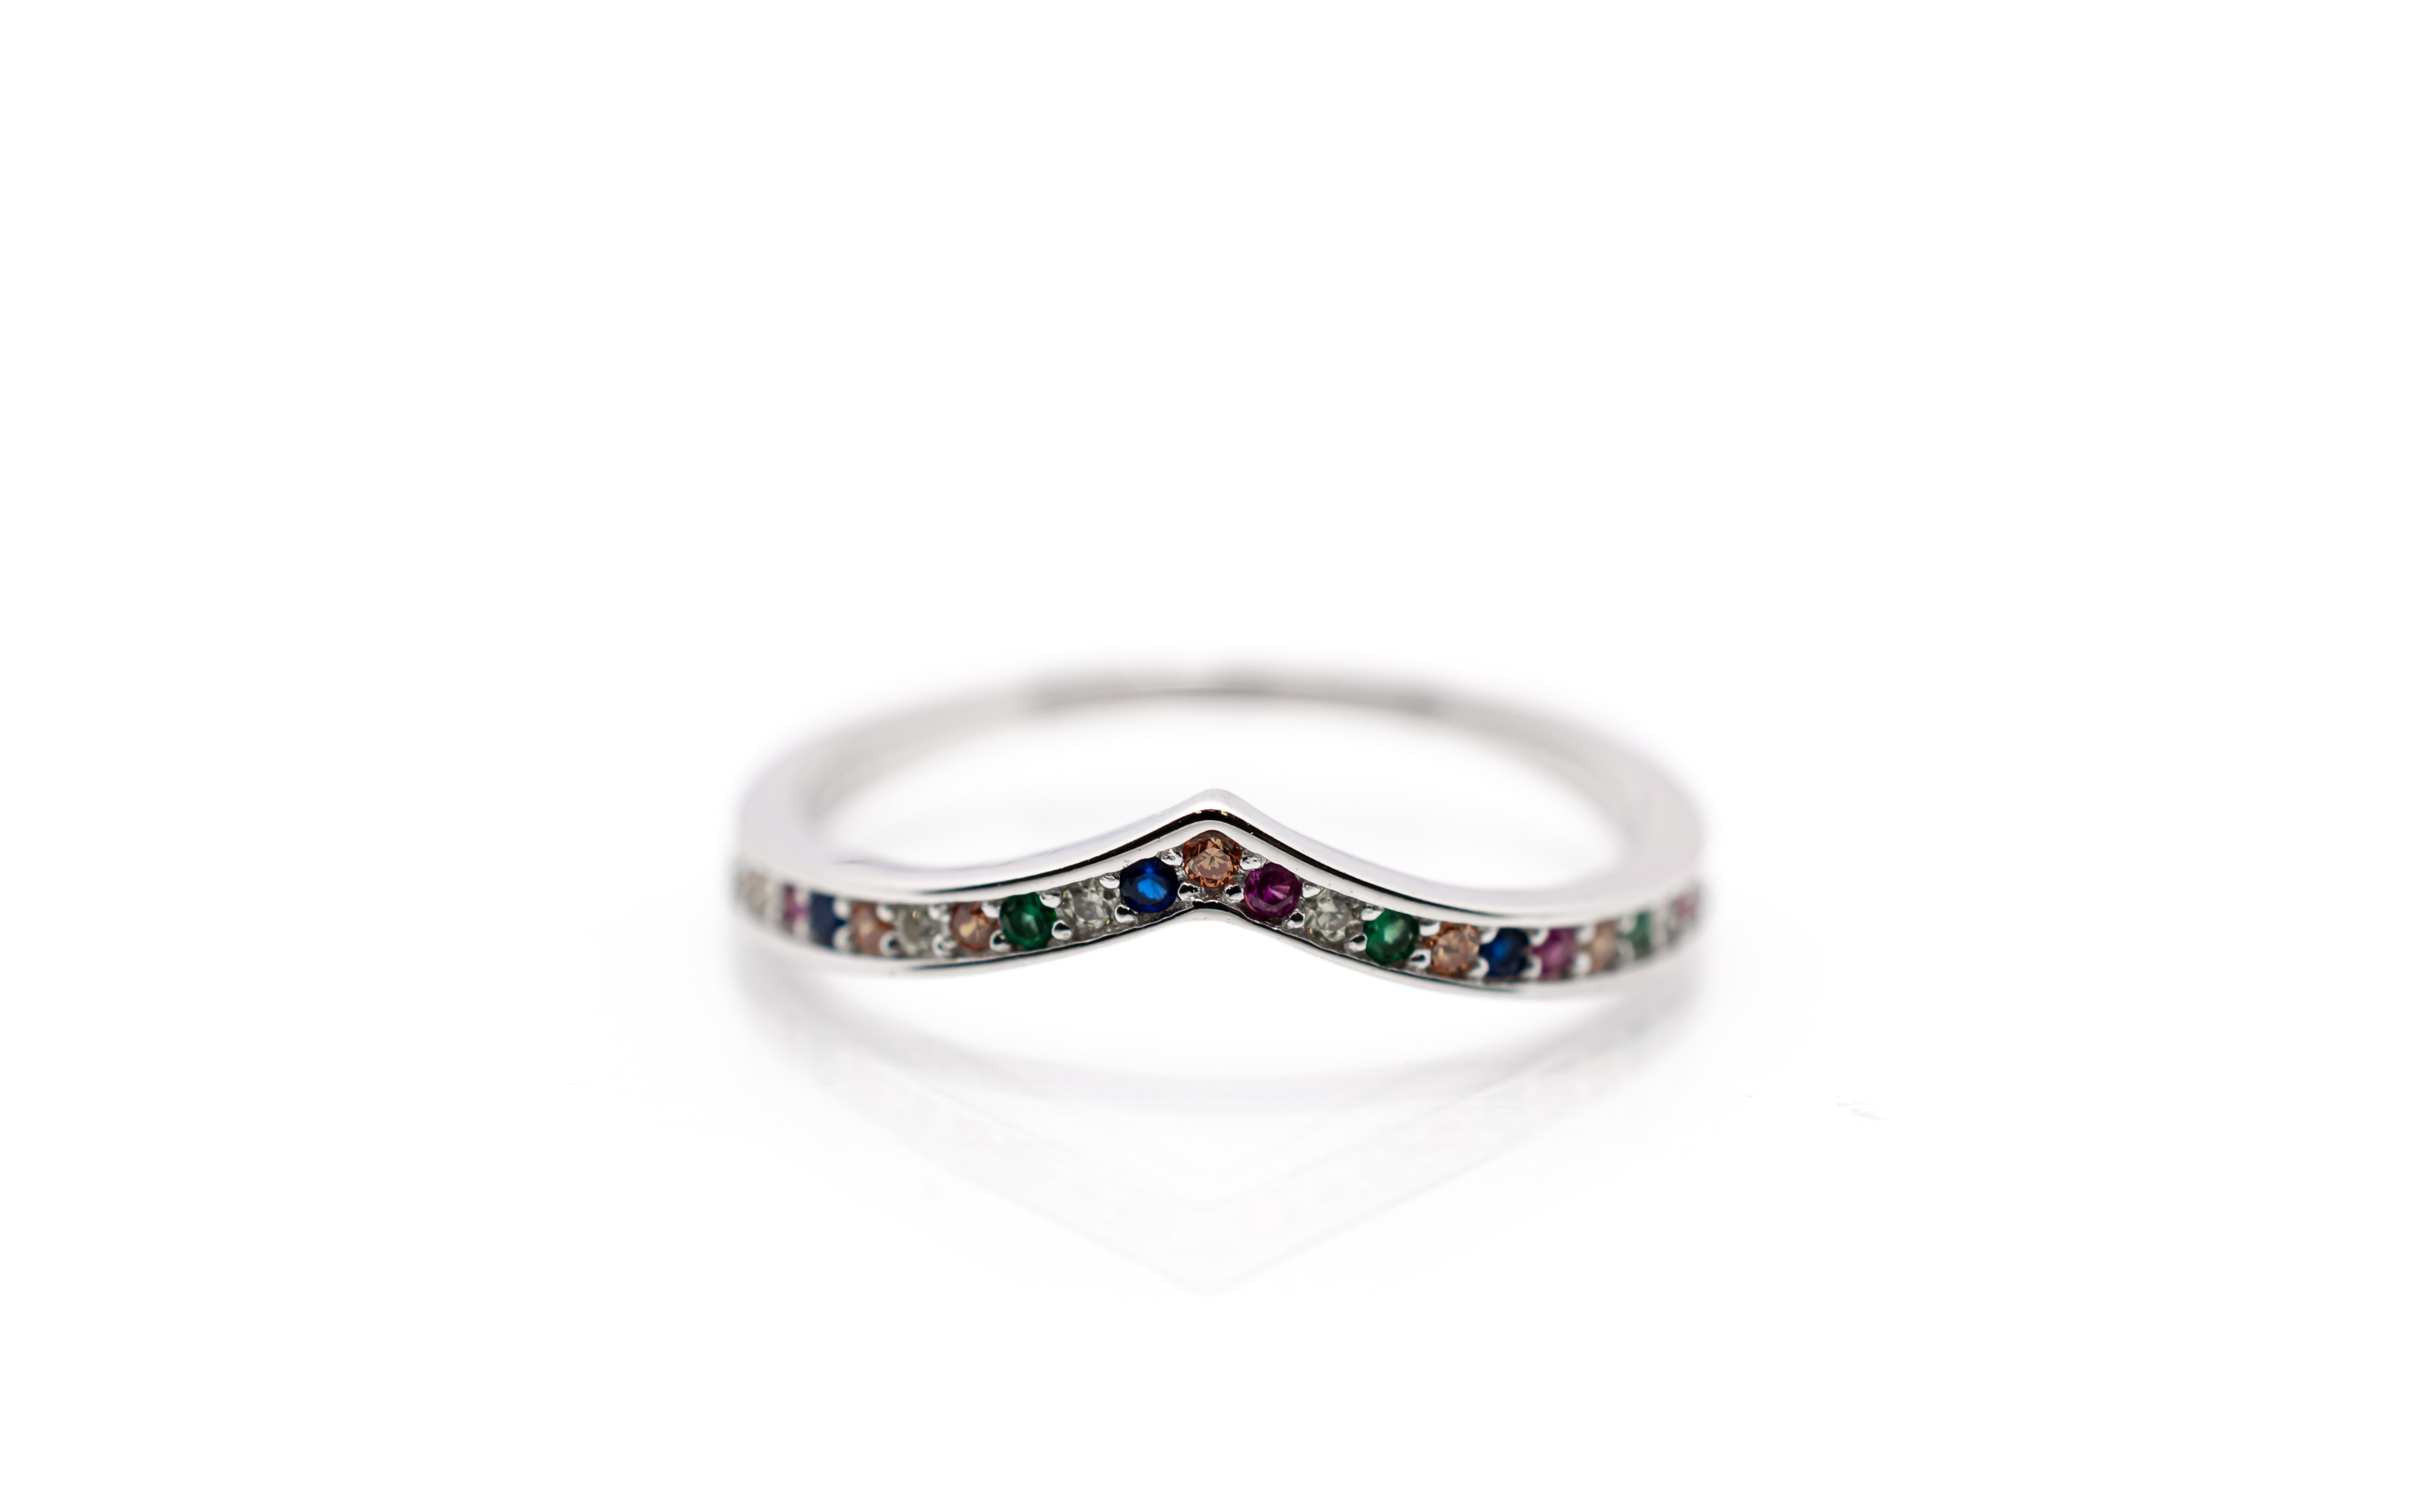 Stříbrný prsten s barevnými kamínky